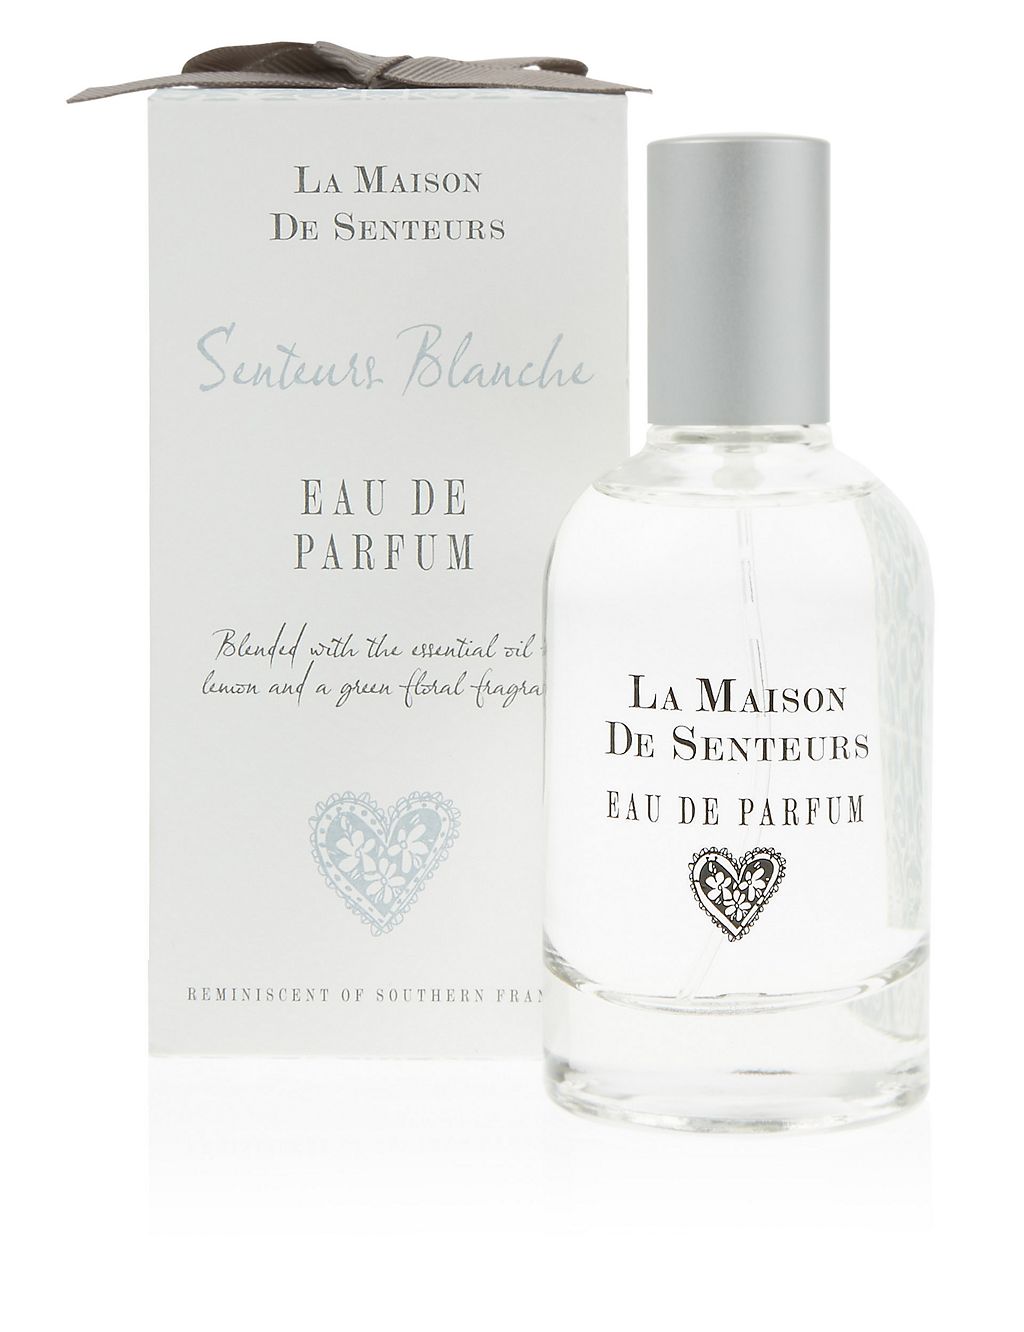 Senteurs Blanche Eau de Parfum 2 of 2